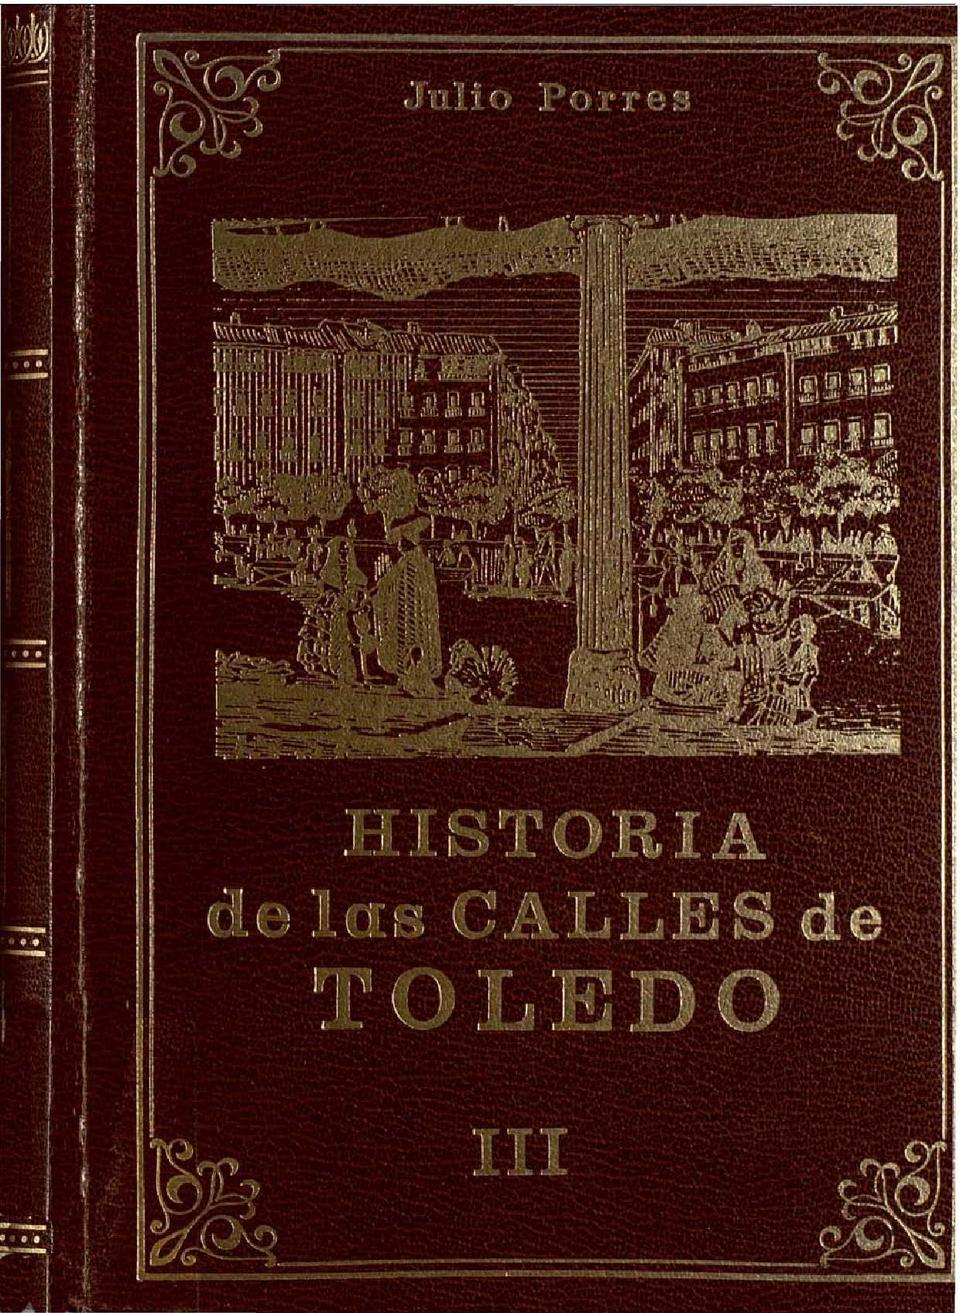 Historia de las calles de Toledo. III / Julio Porres Martín-Cleto.-. [Monografía]